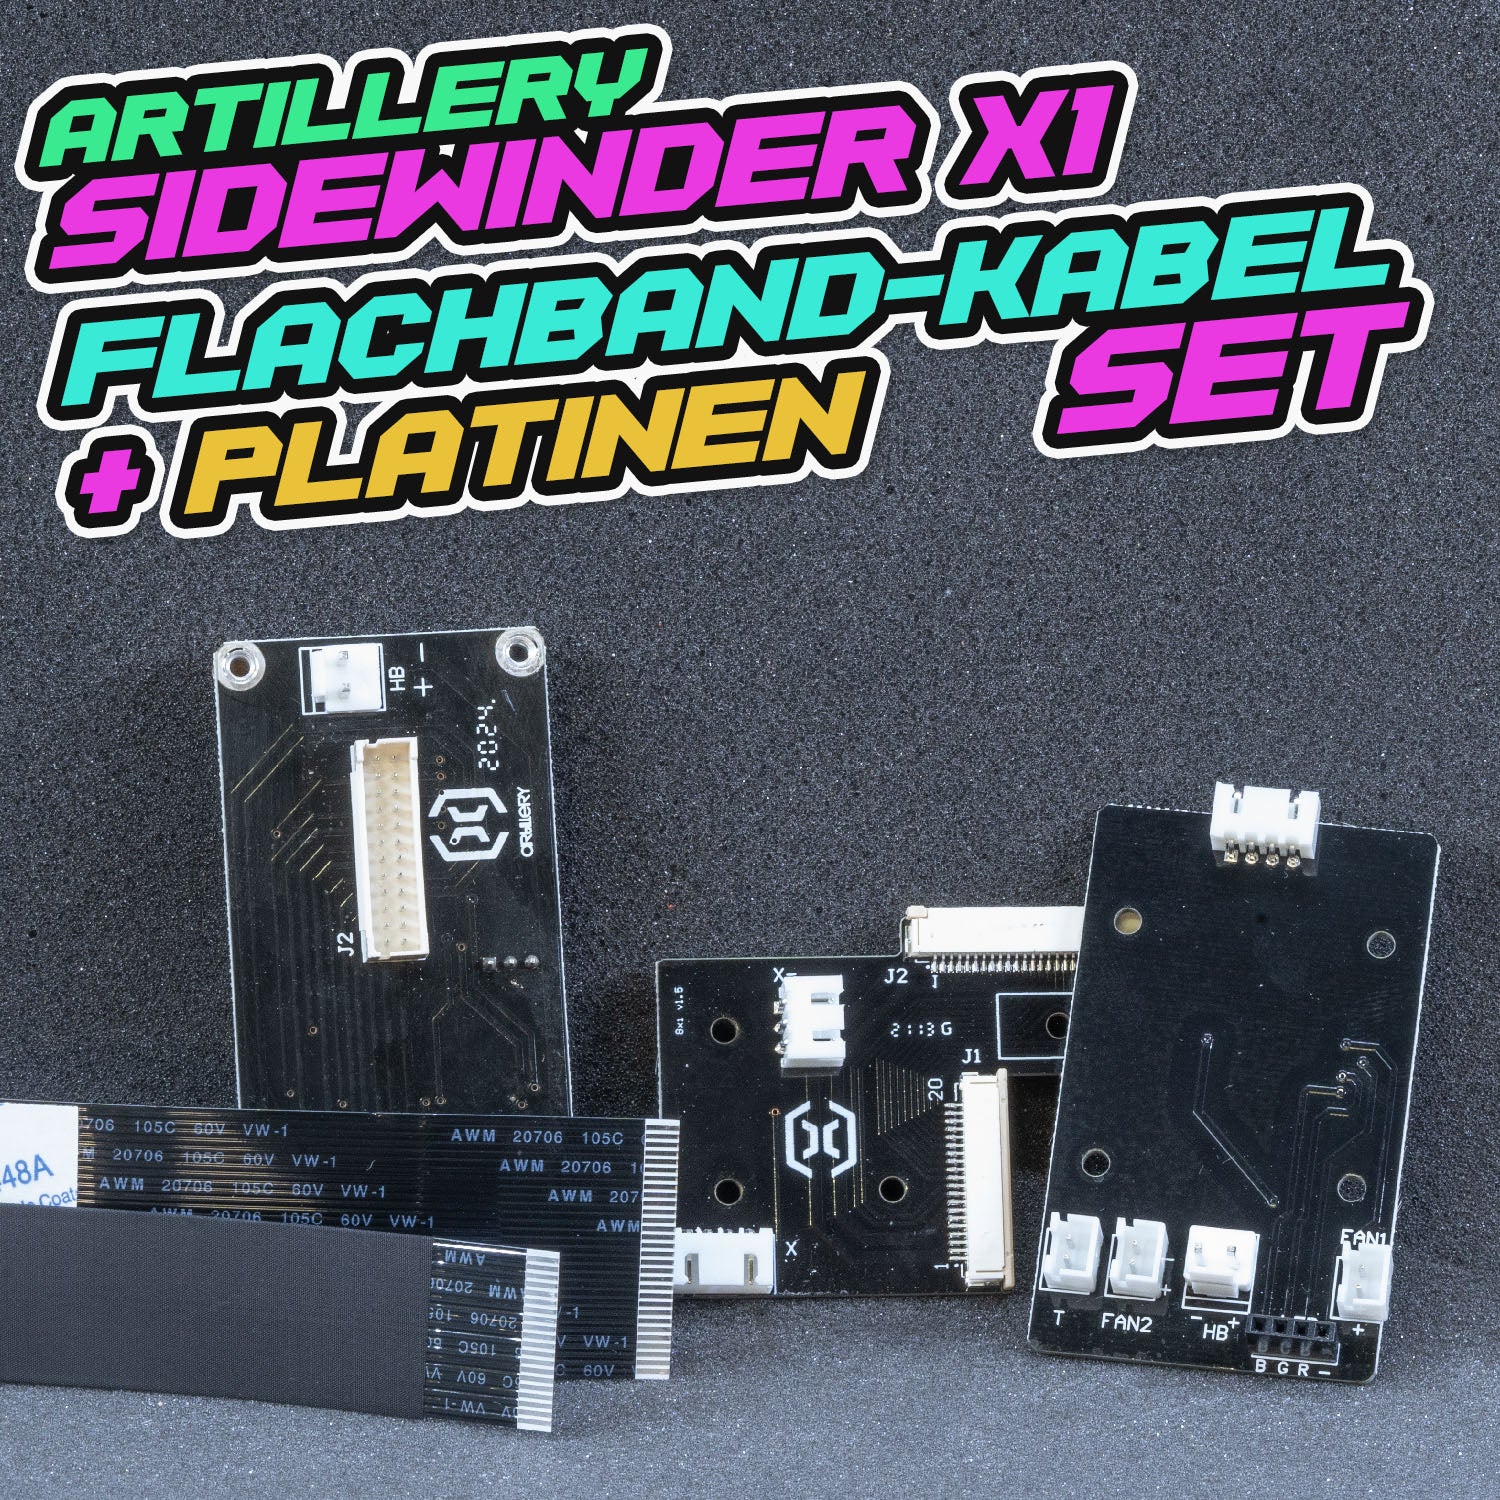 Artillery Sidewinder X1 - Flachbandkabel + Platinen Set